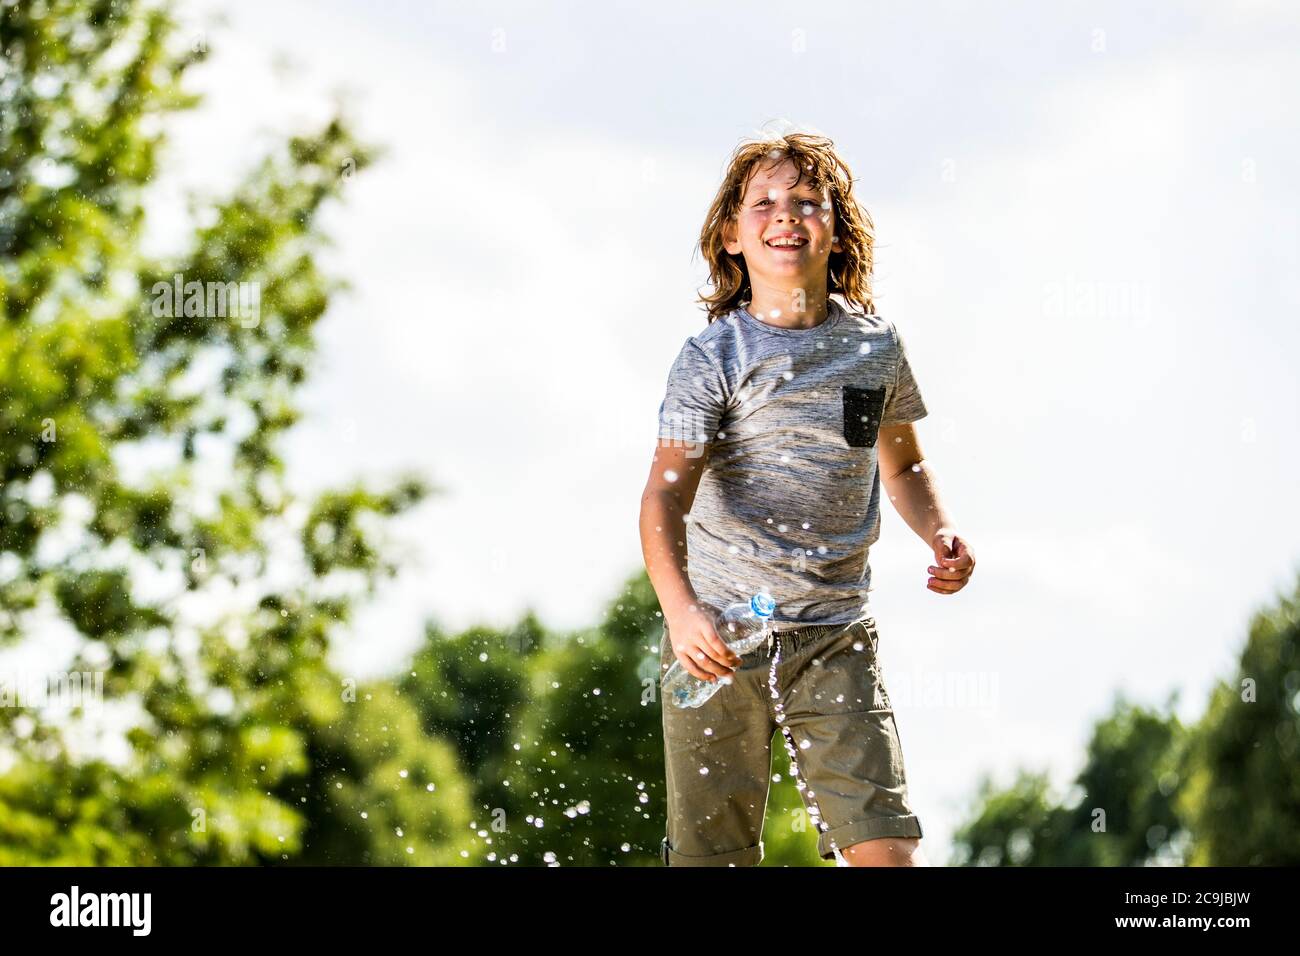 Niño salpicando agua de una botella de plástico, sonriendo, retrato. Foto de stock